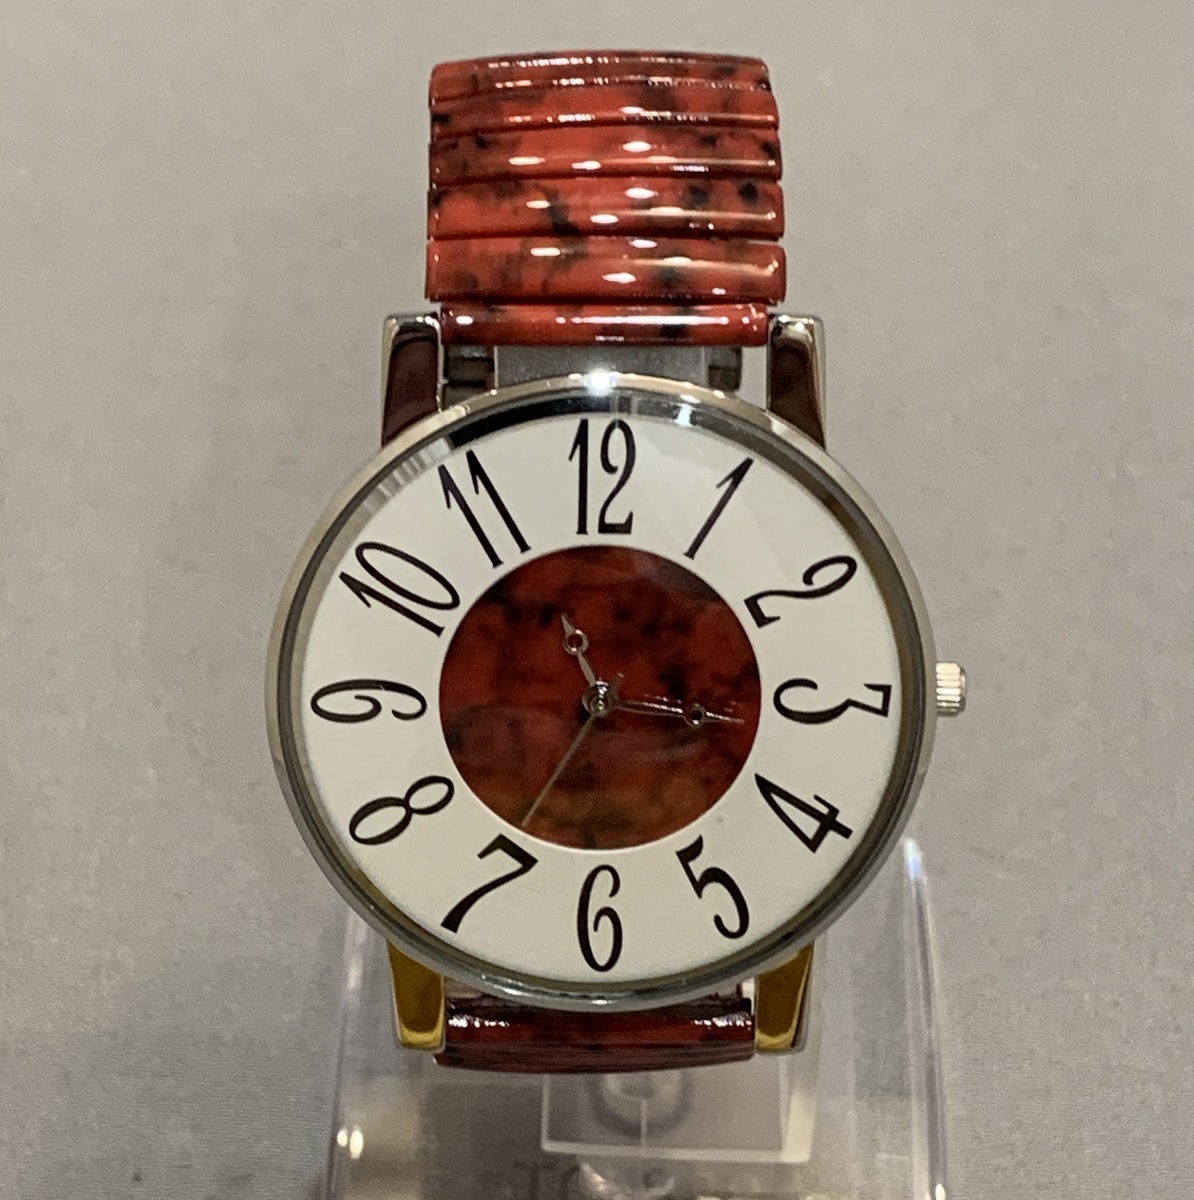  наручные часы женский мода часы браслет часы сделано в Японии Movement красный циферблат . большой .. ремень 